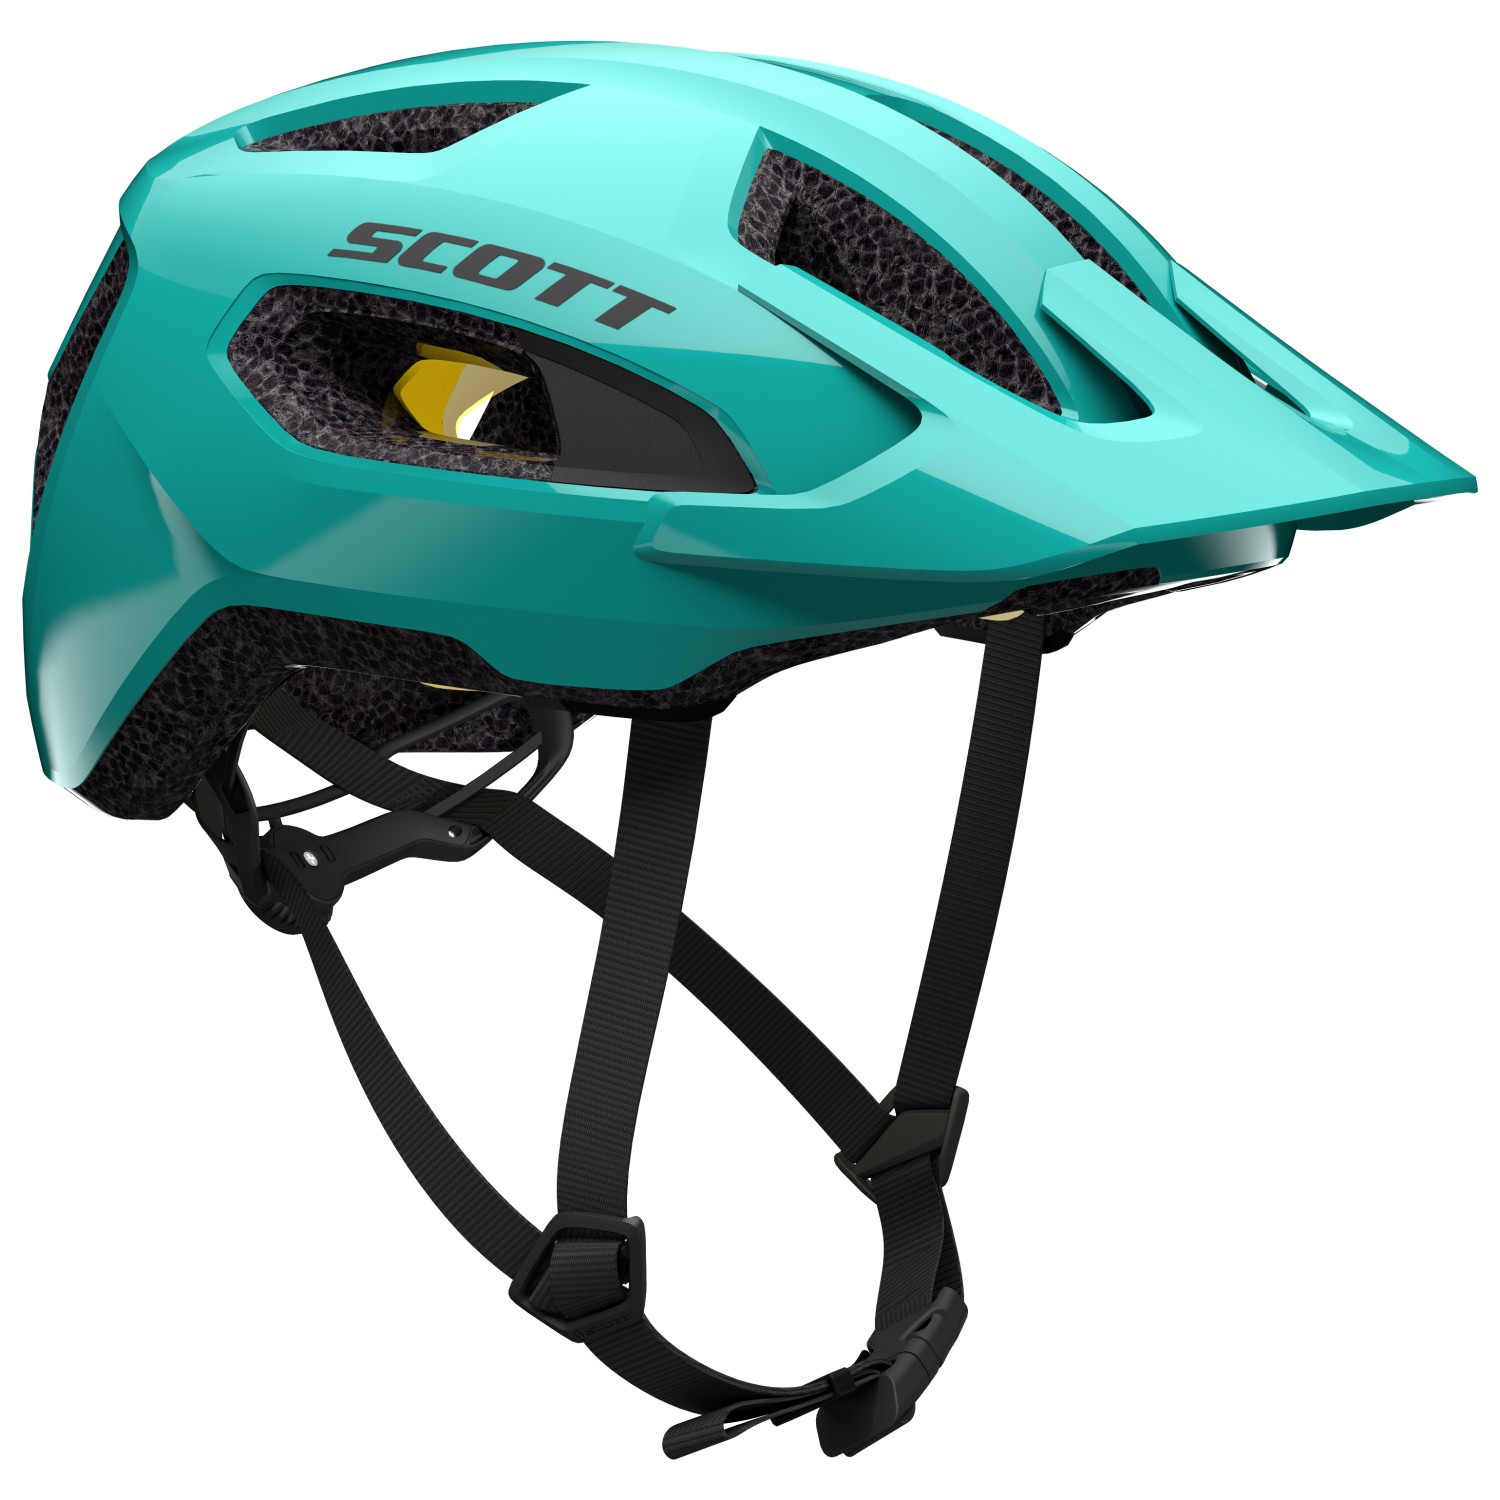 Велосипедный шлем Scott Supra Plus, цвет Soft Teal Green шлем велосипедный sisak универсальный всесезонный детский спортивный шлем для горных велосипедов cobwebs